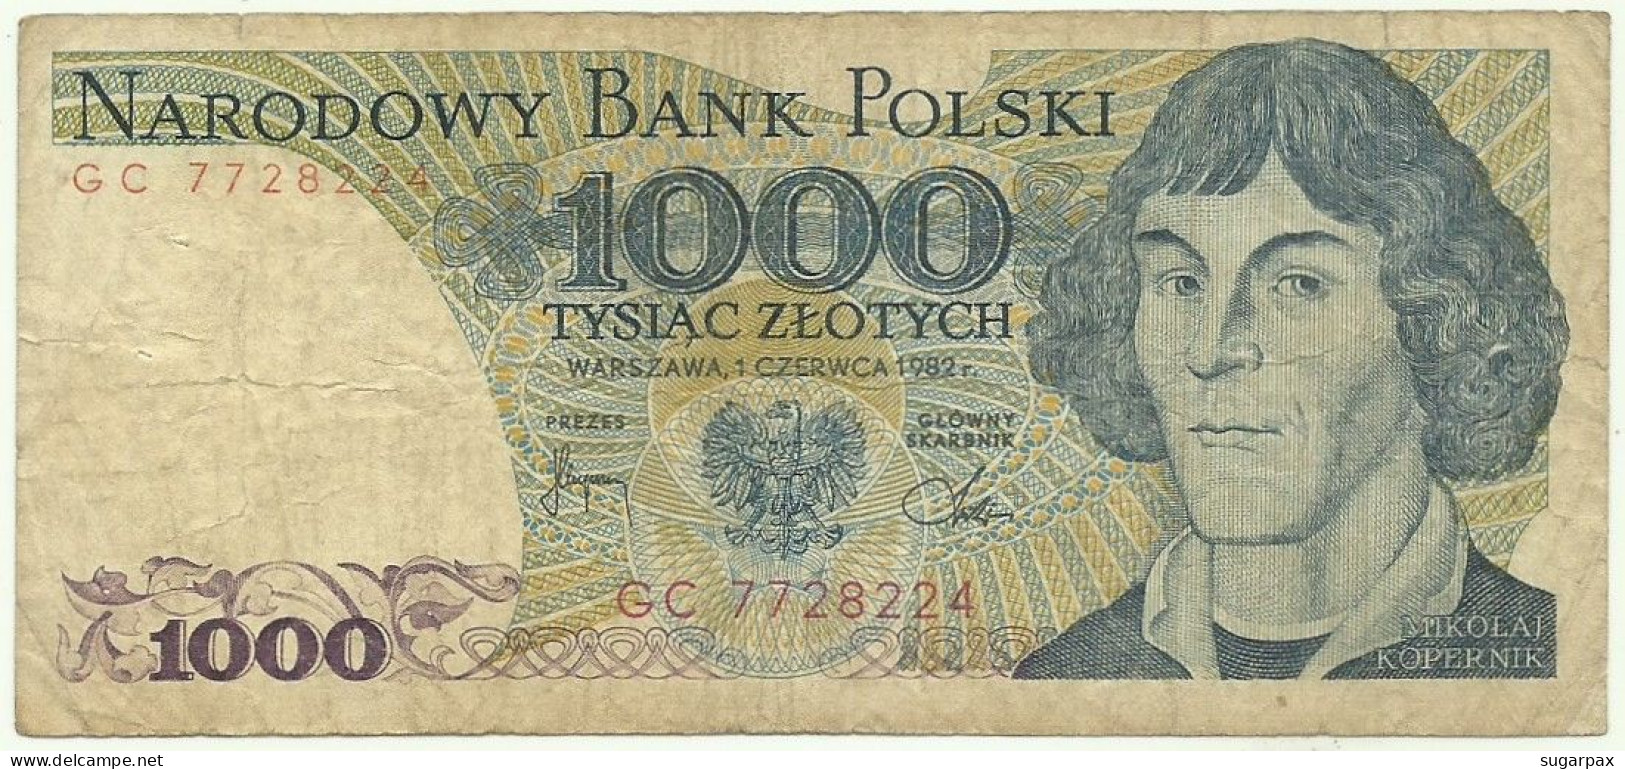 POLAND - 1000 Zlotych - 1982 - Pick 146.c - Série GC - Narodowy Bank Polski - 1.000 - Poland